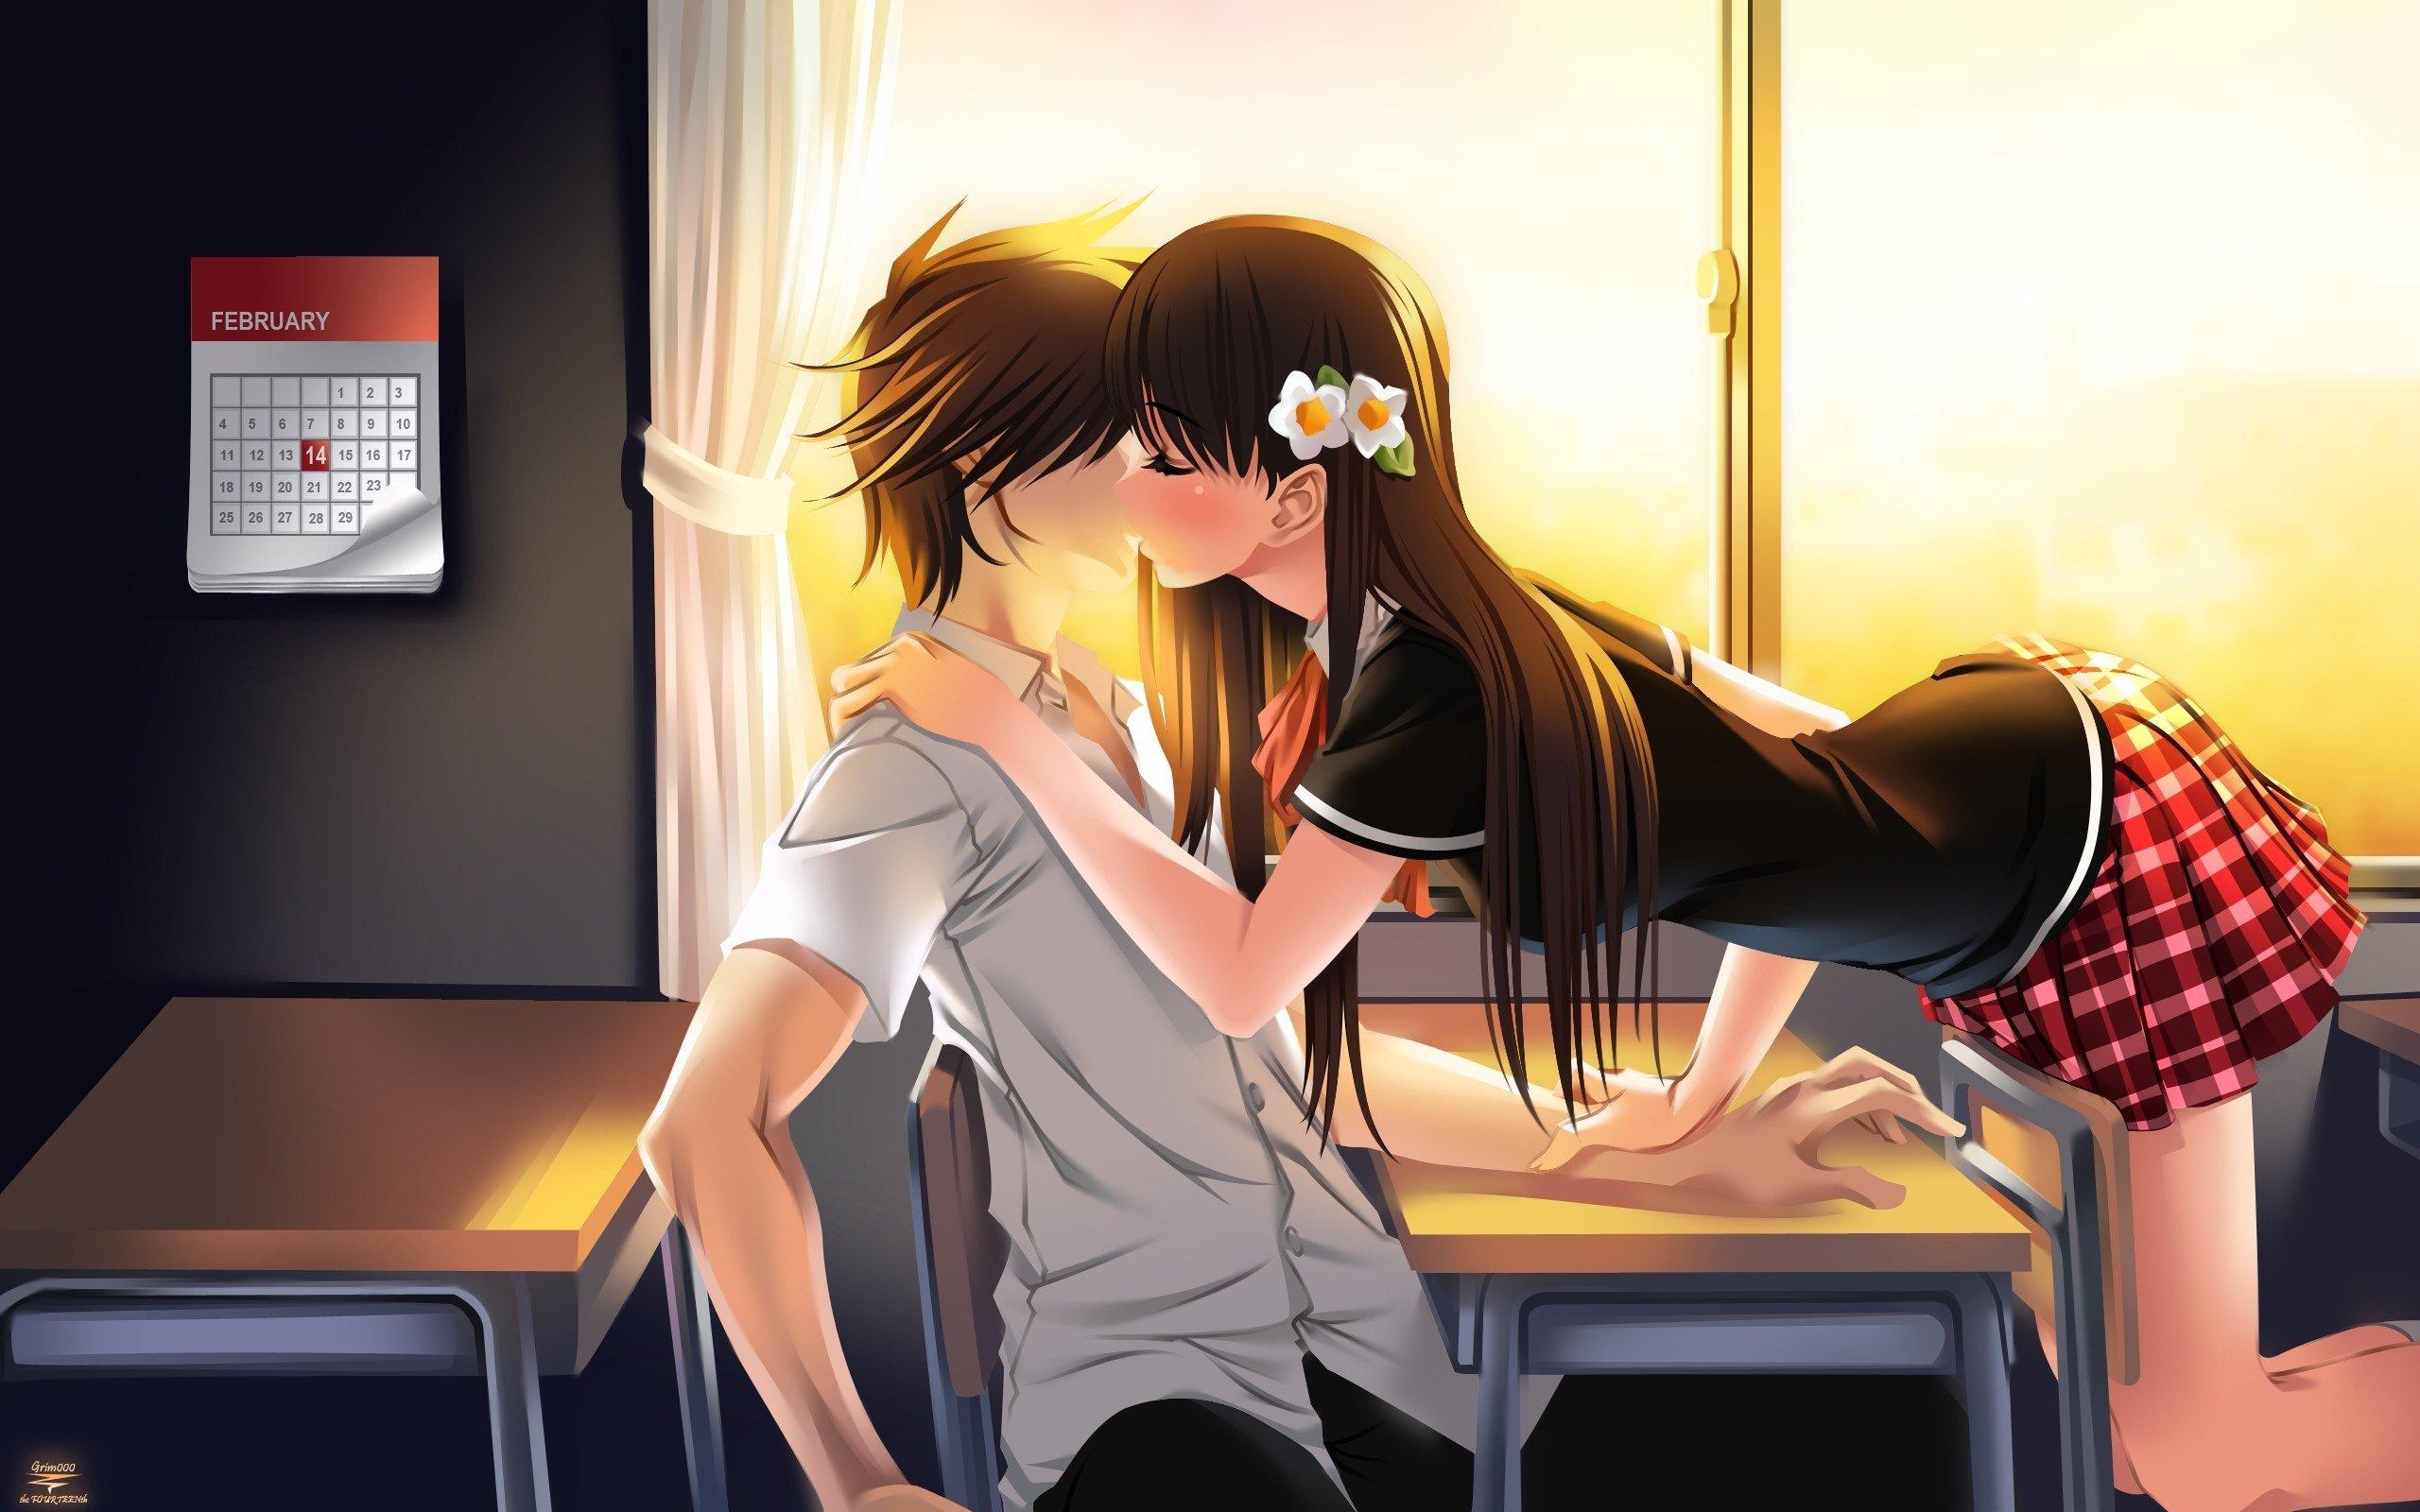 Anime girl kiss